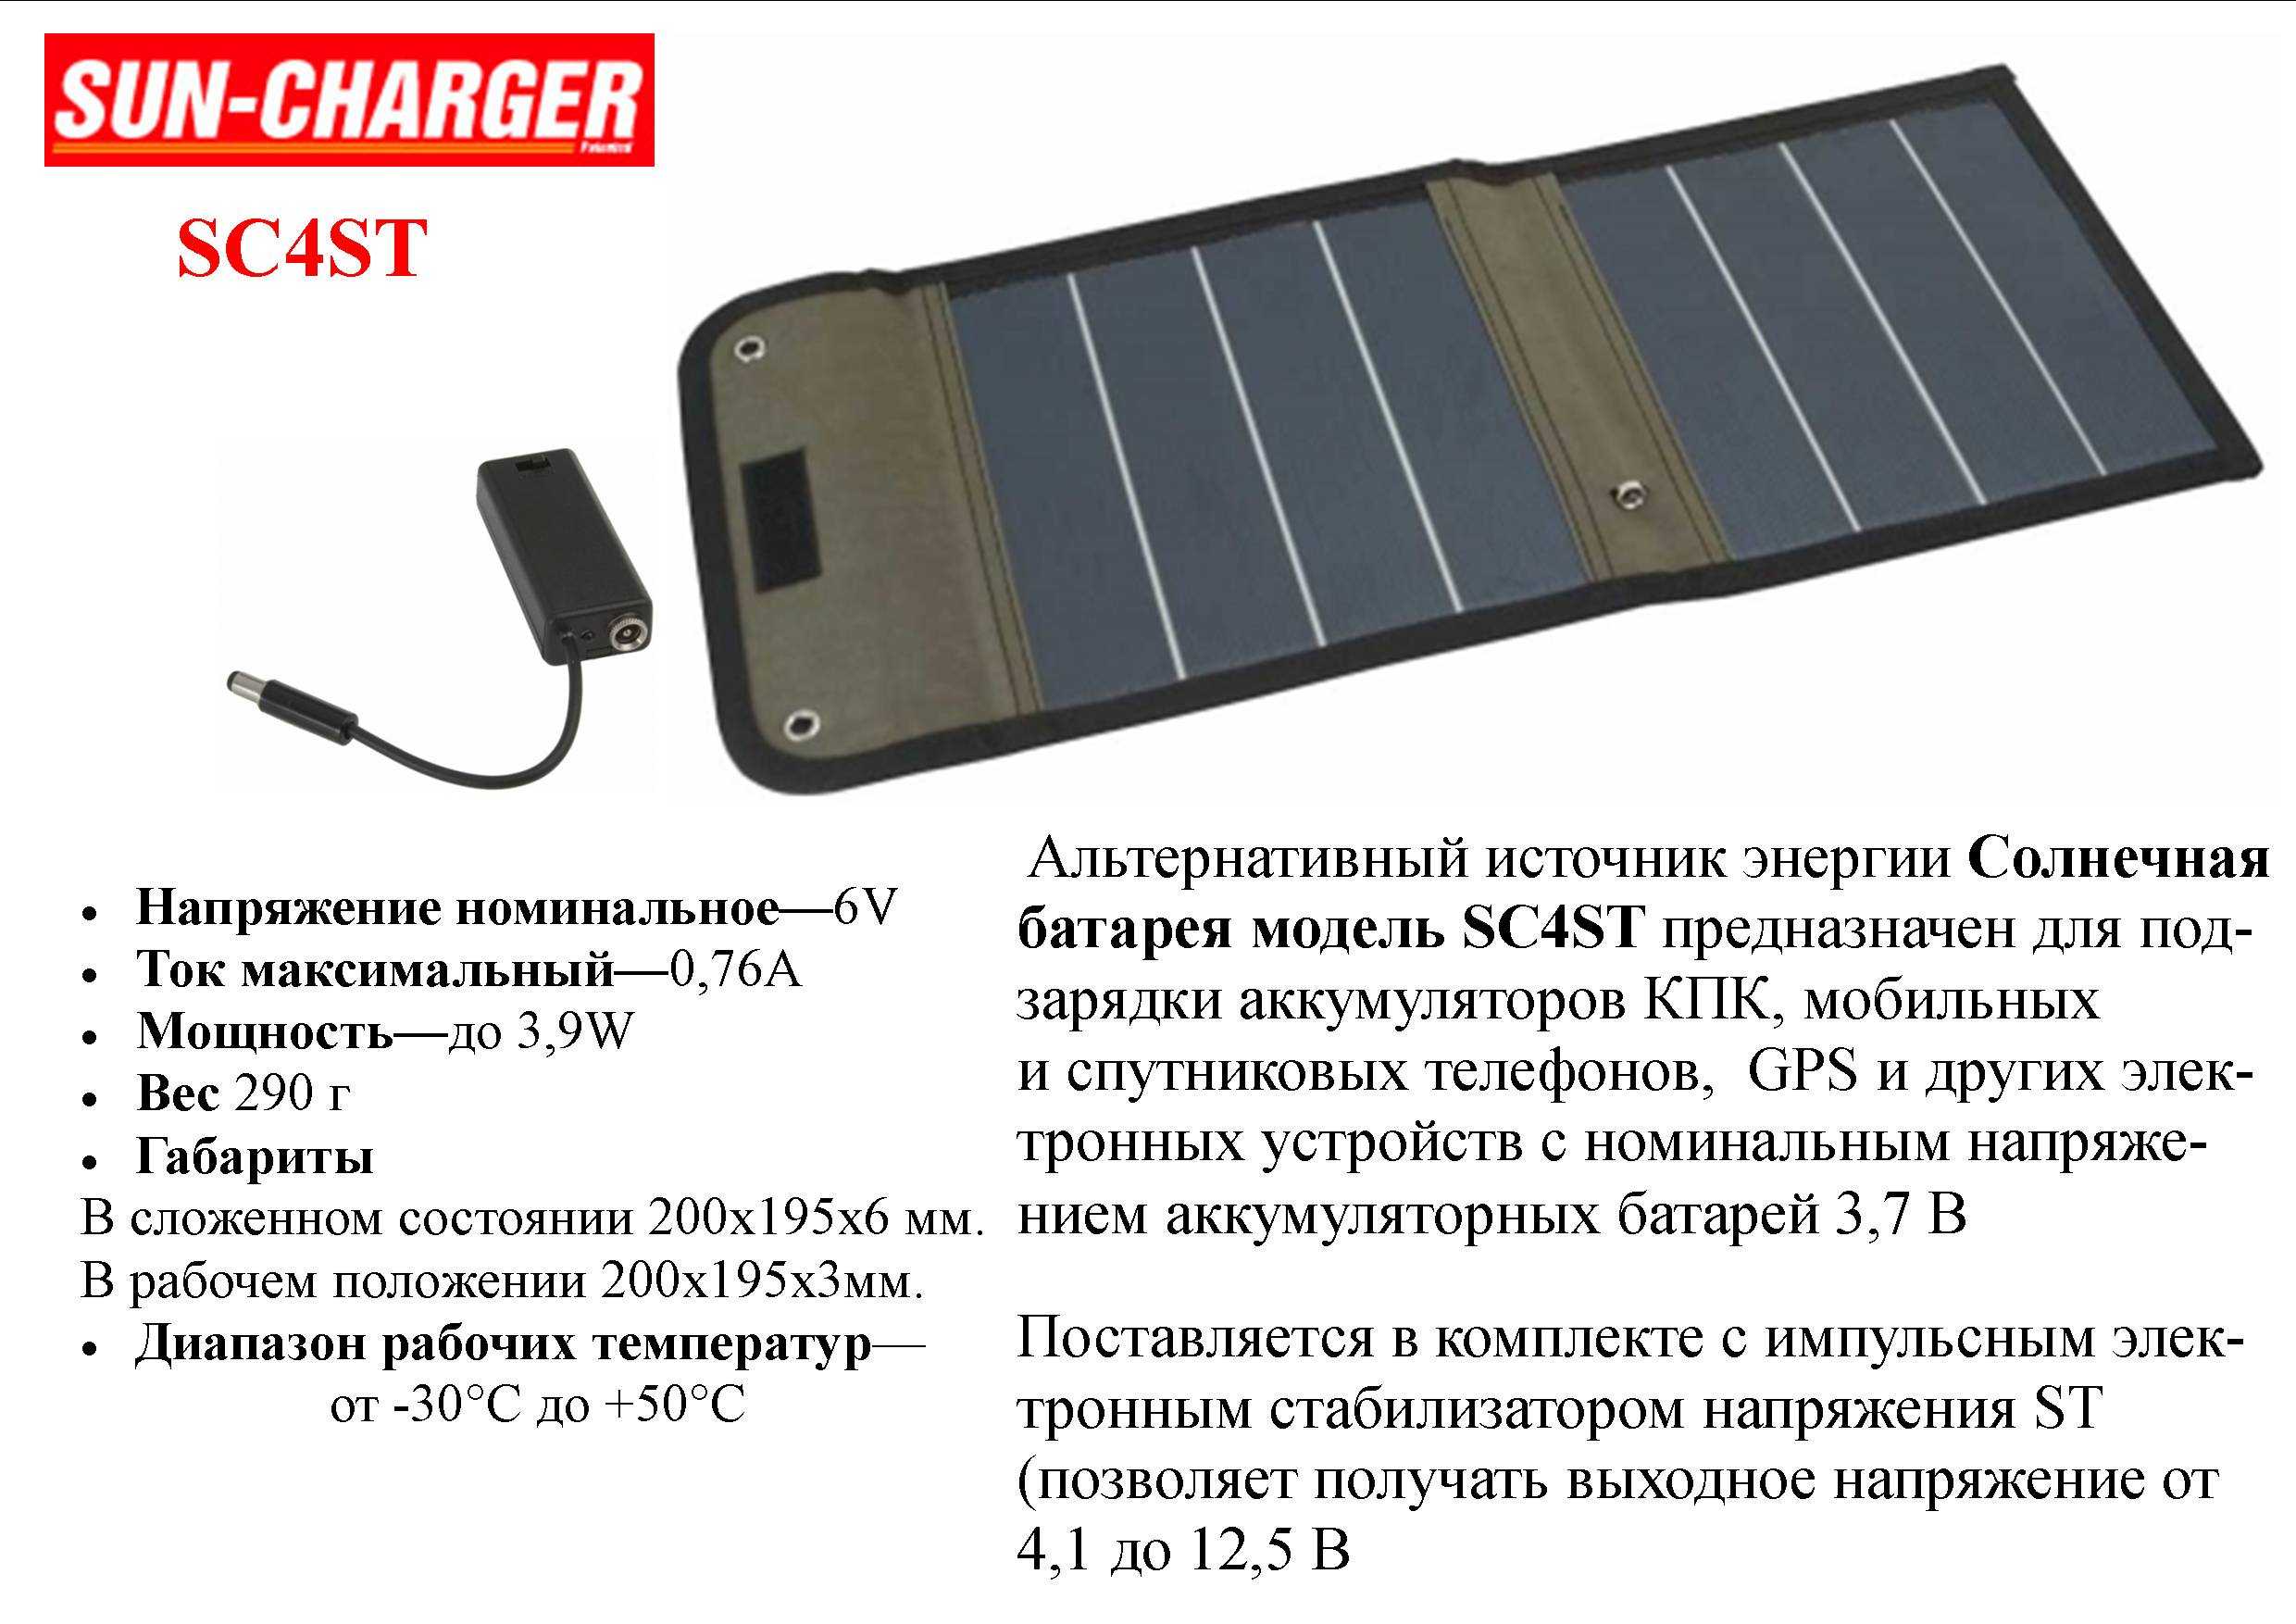 Gel и agm аккумуляторы для солнечных батарей | альтернативные энергии